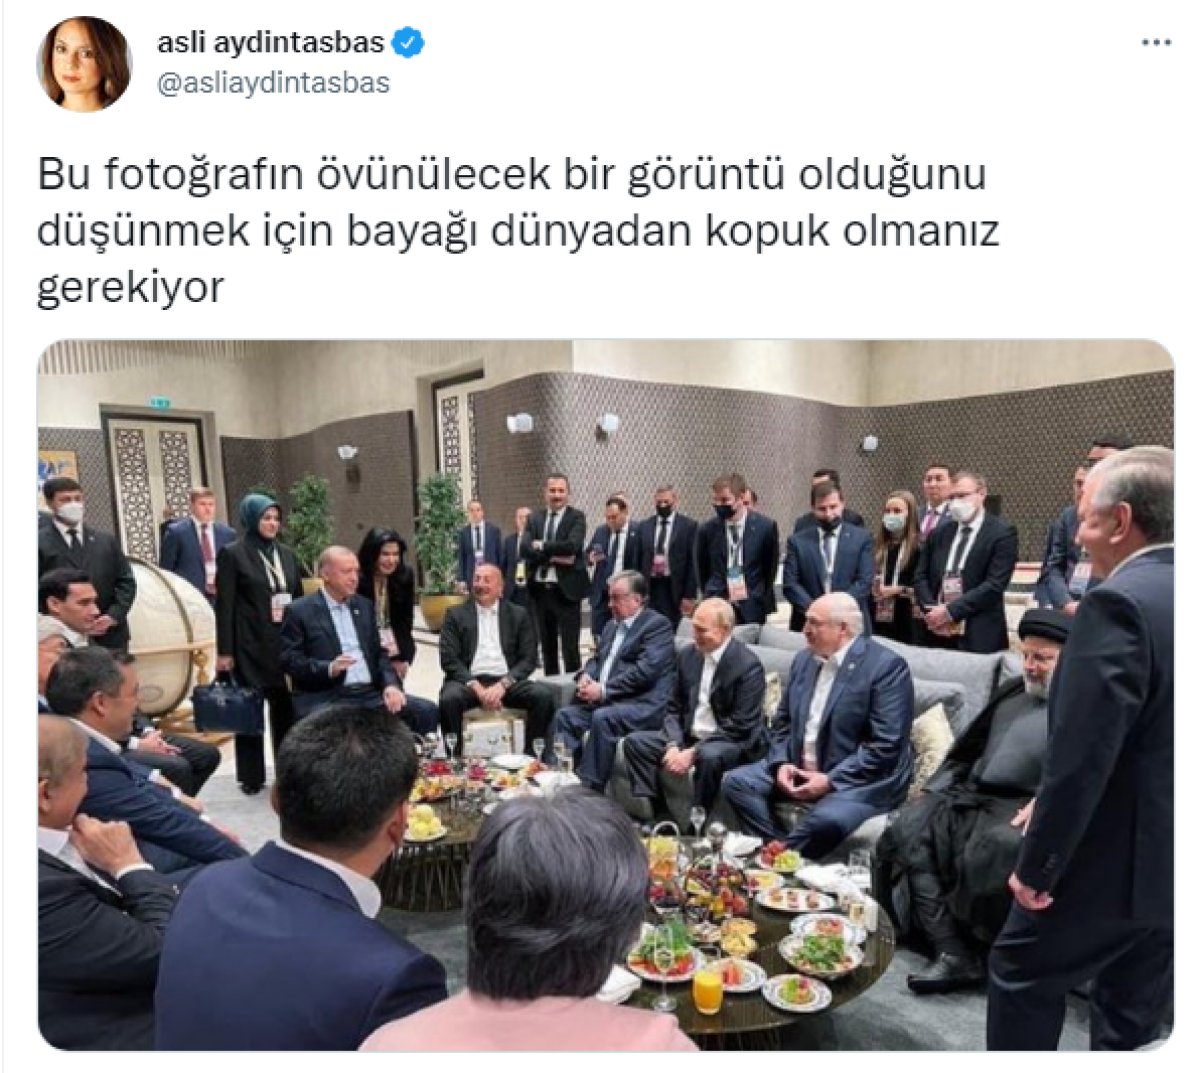 Aslı Aydıntaşbaş ve Nevşin Mengü den Erdoğan ın liderlerle fotoğrafına övgü tepkisi #2